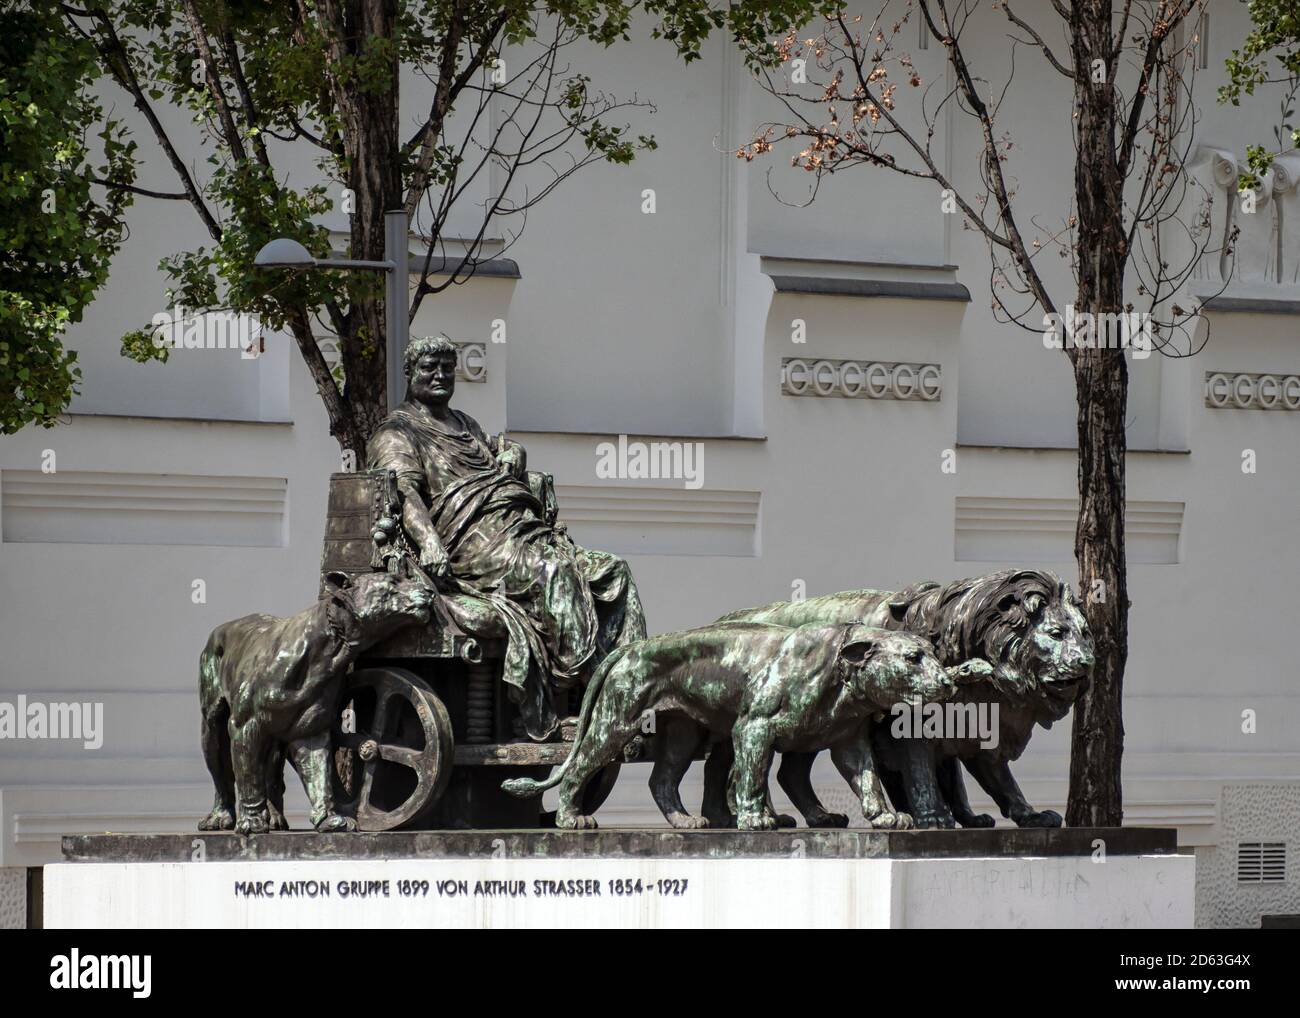 VIENNA, AUSTRIA - 15 LUGLIO 2019: Statua di Marc Antony in carro trainata dai leoni (da Arthur Strasser) in Friedrichstrasse Foto Stock